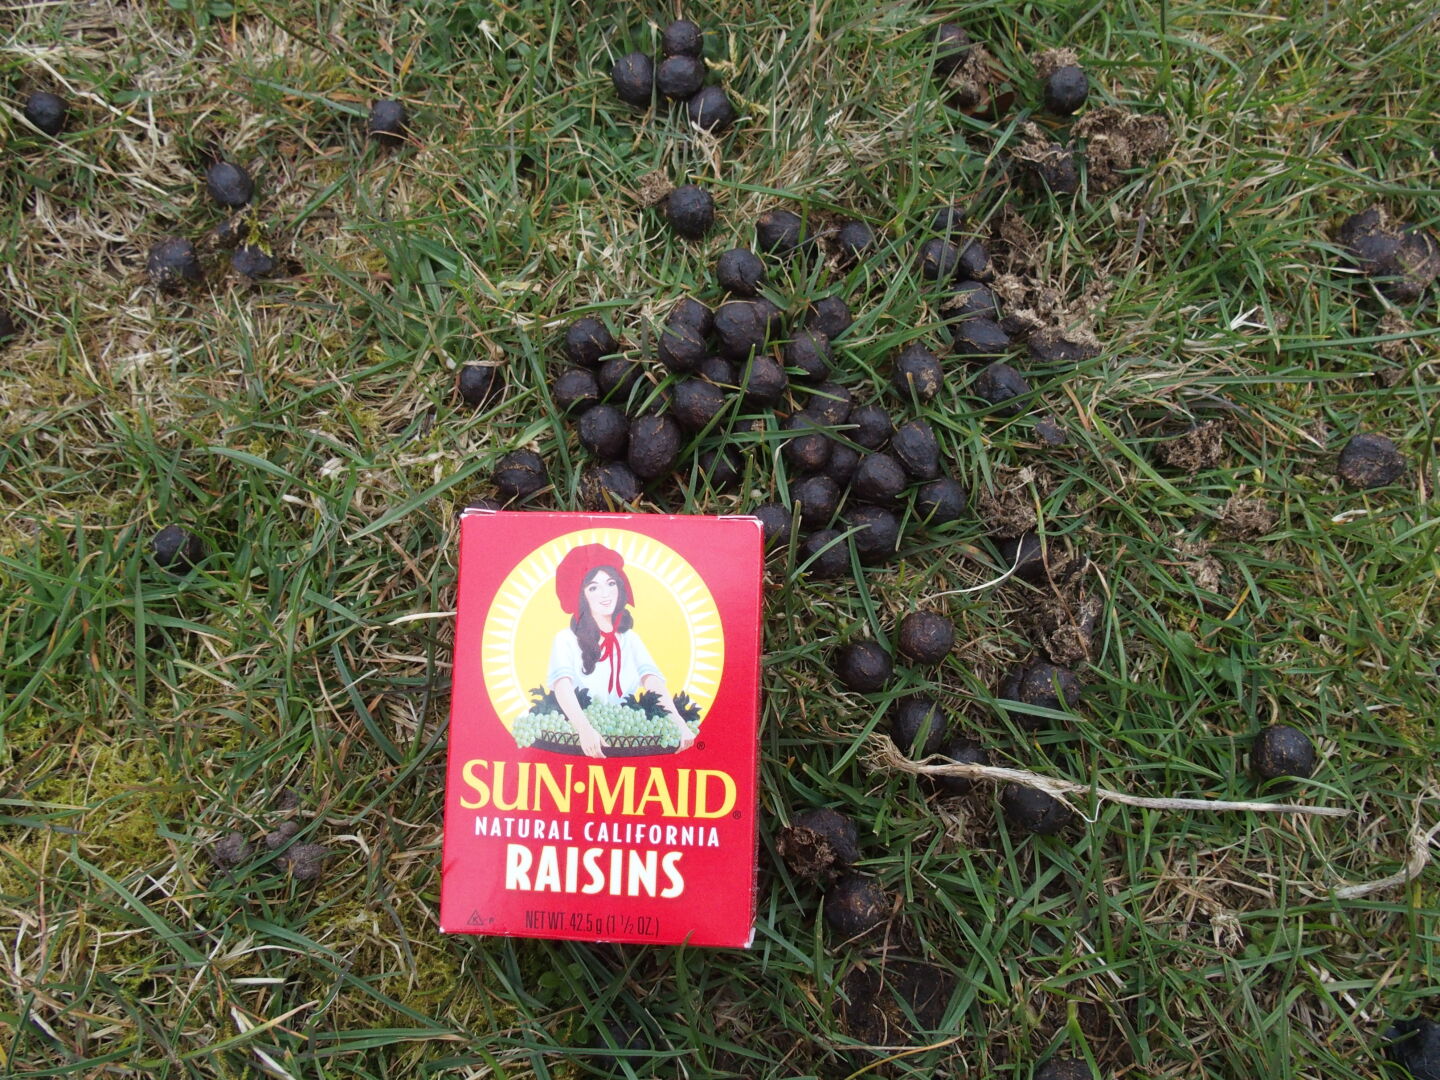 Raisins?